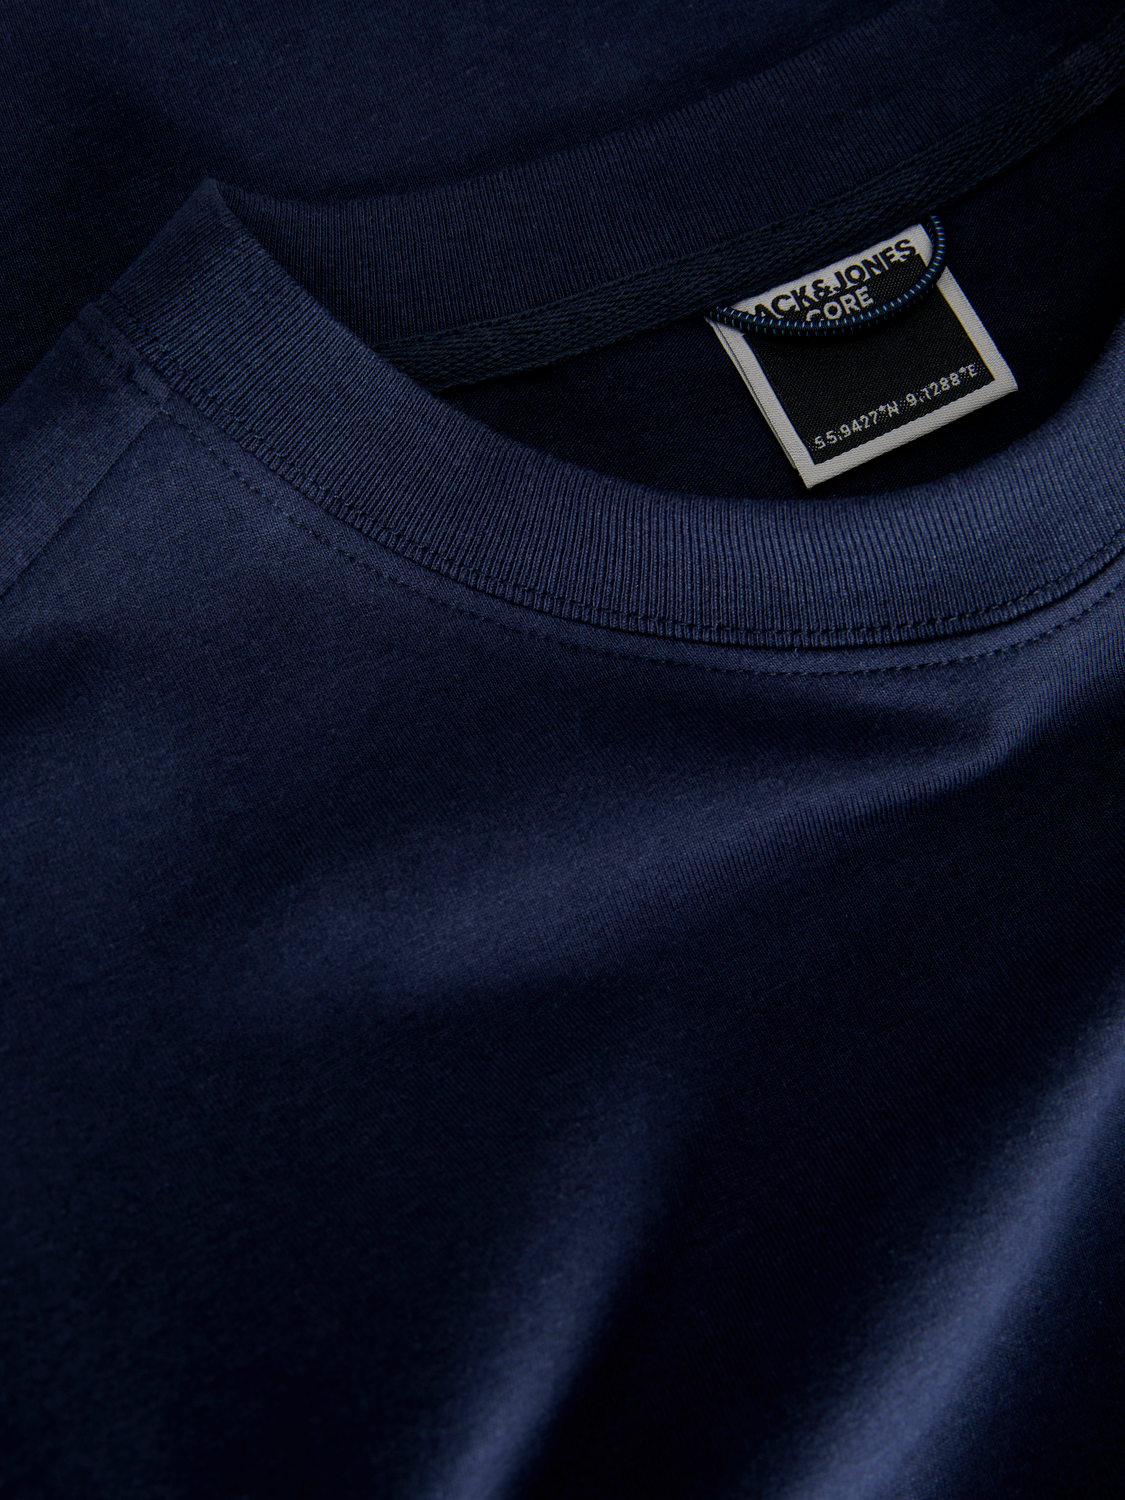 Jack & Jones Wide Fit Round Neck T-Shirt -Navy Blazer - 12253363